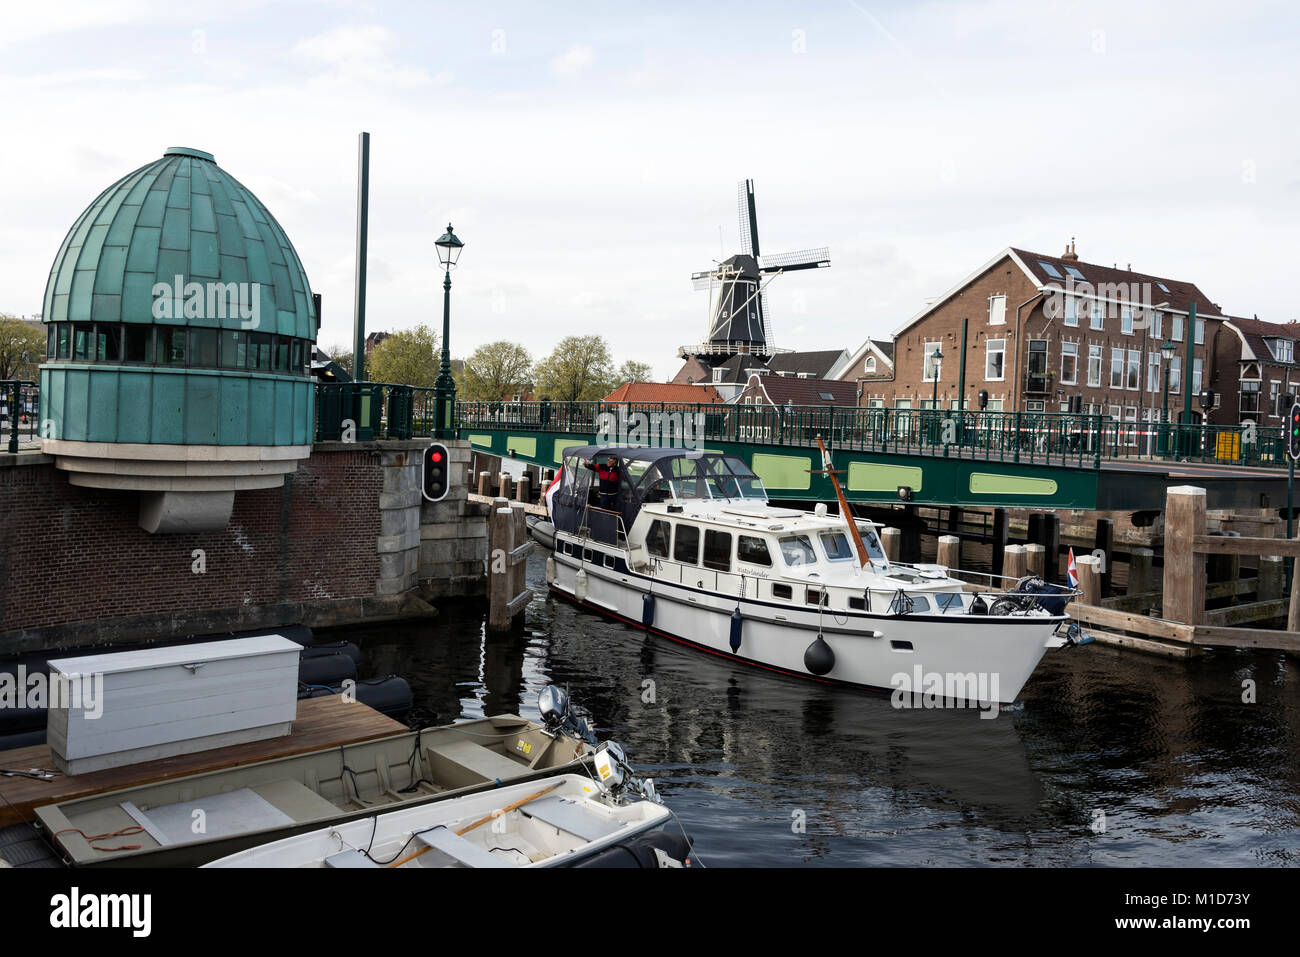 Un pont-levis s'ouvre afin de permettre à un bateau de passer sur la rivière Spaarne Haarlem, en Hollande. Dans la distance est la Molen de Adriaan moulin Banque D'Images